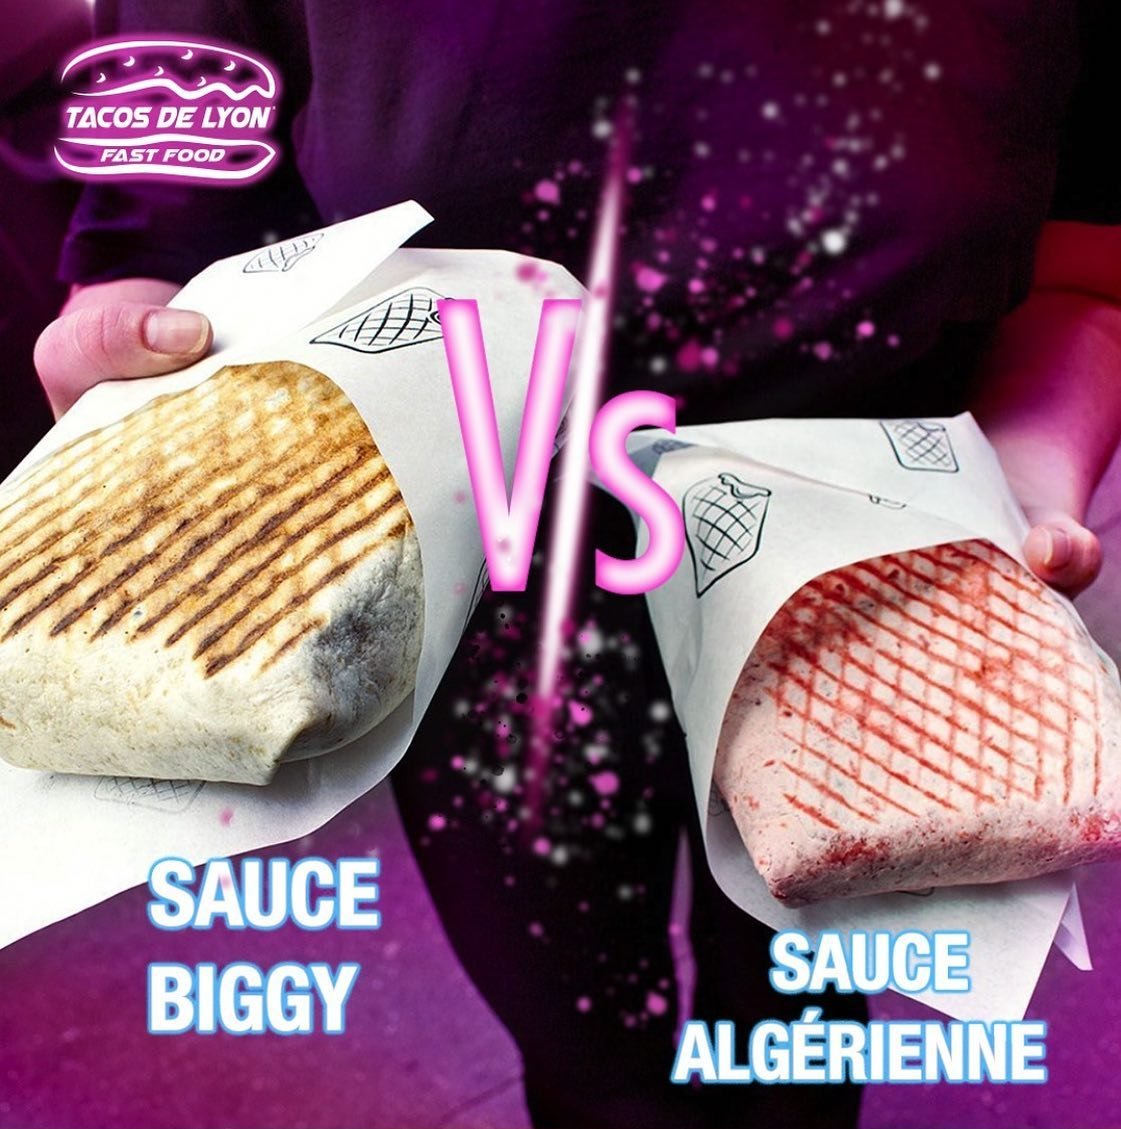 tacos de lyon sauce algérienne vs sauce biggy